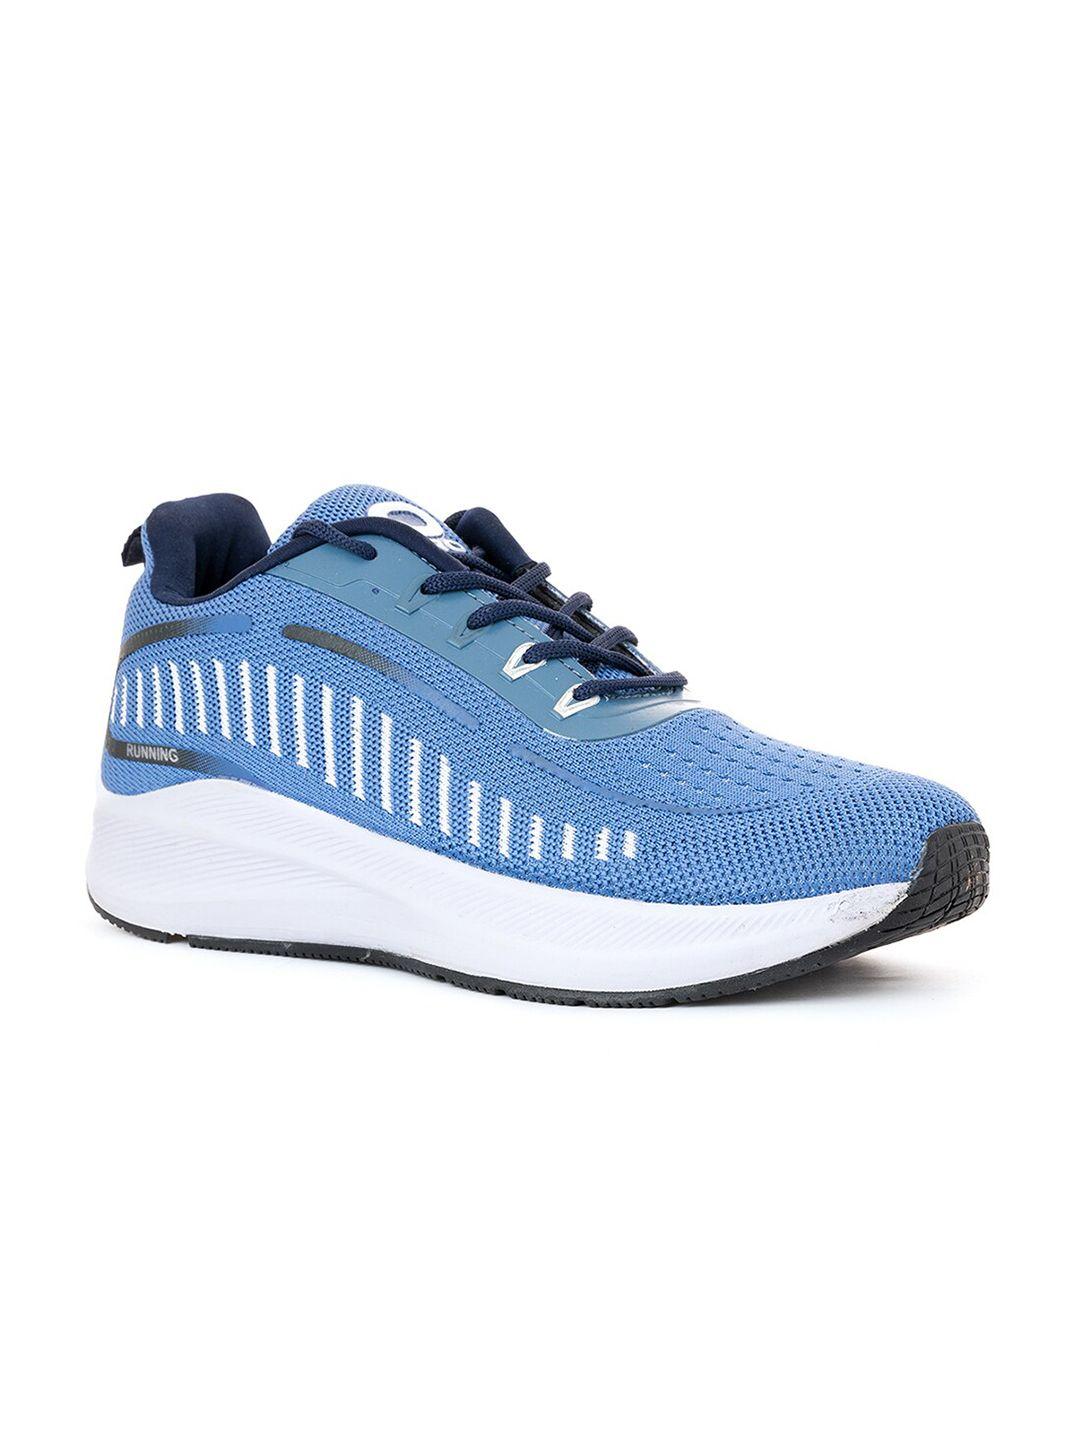 khadims men blue textile running shoes